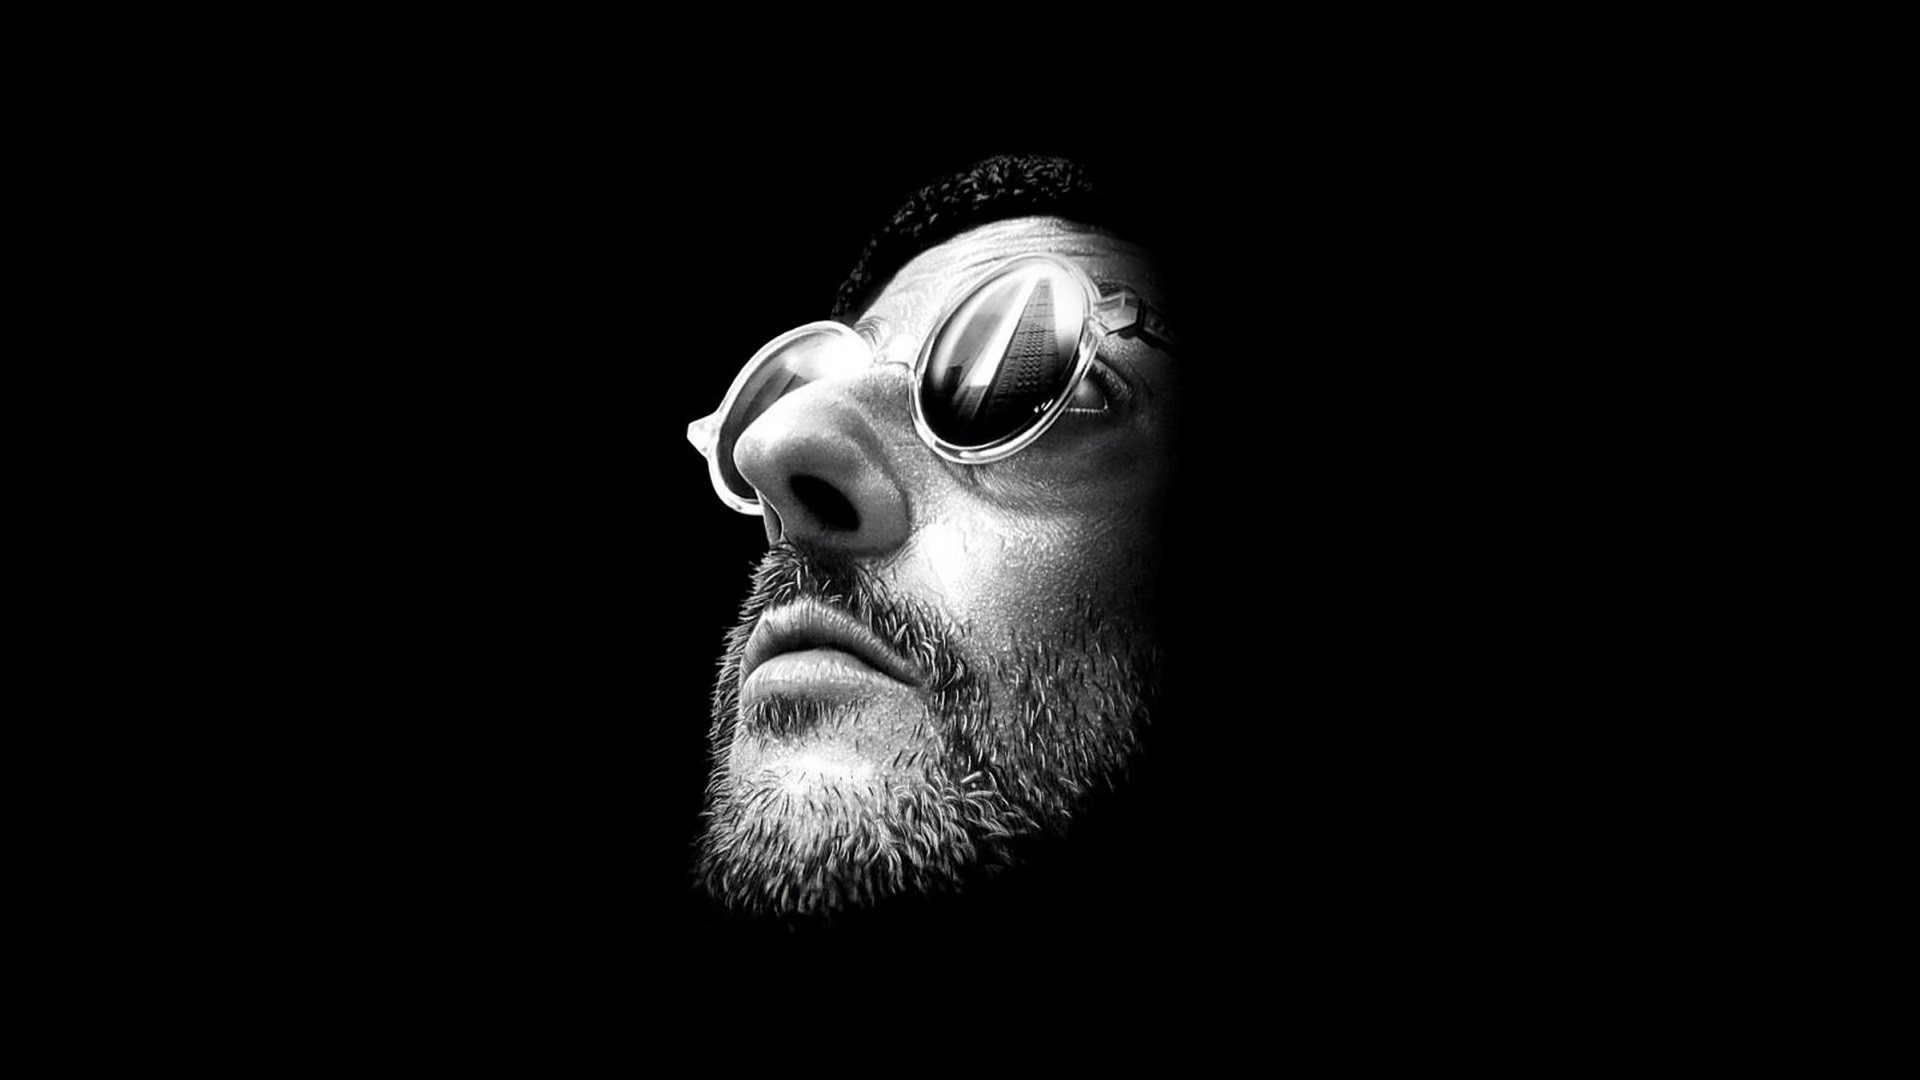 Leon The Professional Jean Reno Sunglasses Black Background Monochrome 1920x1080